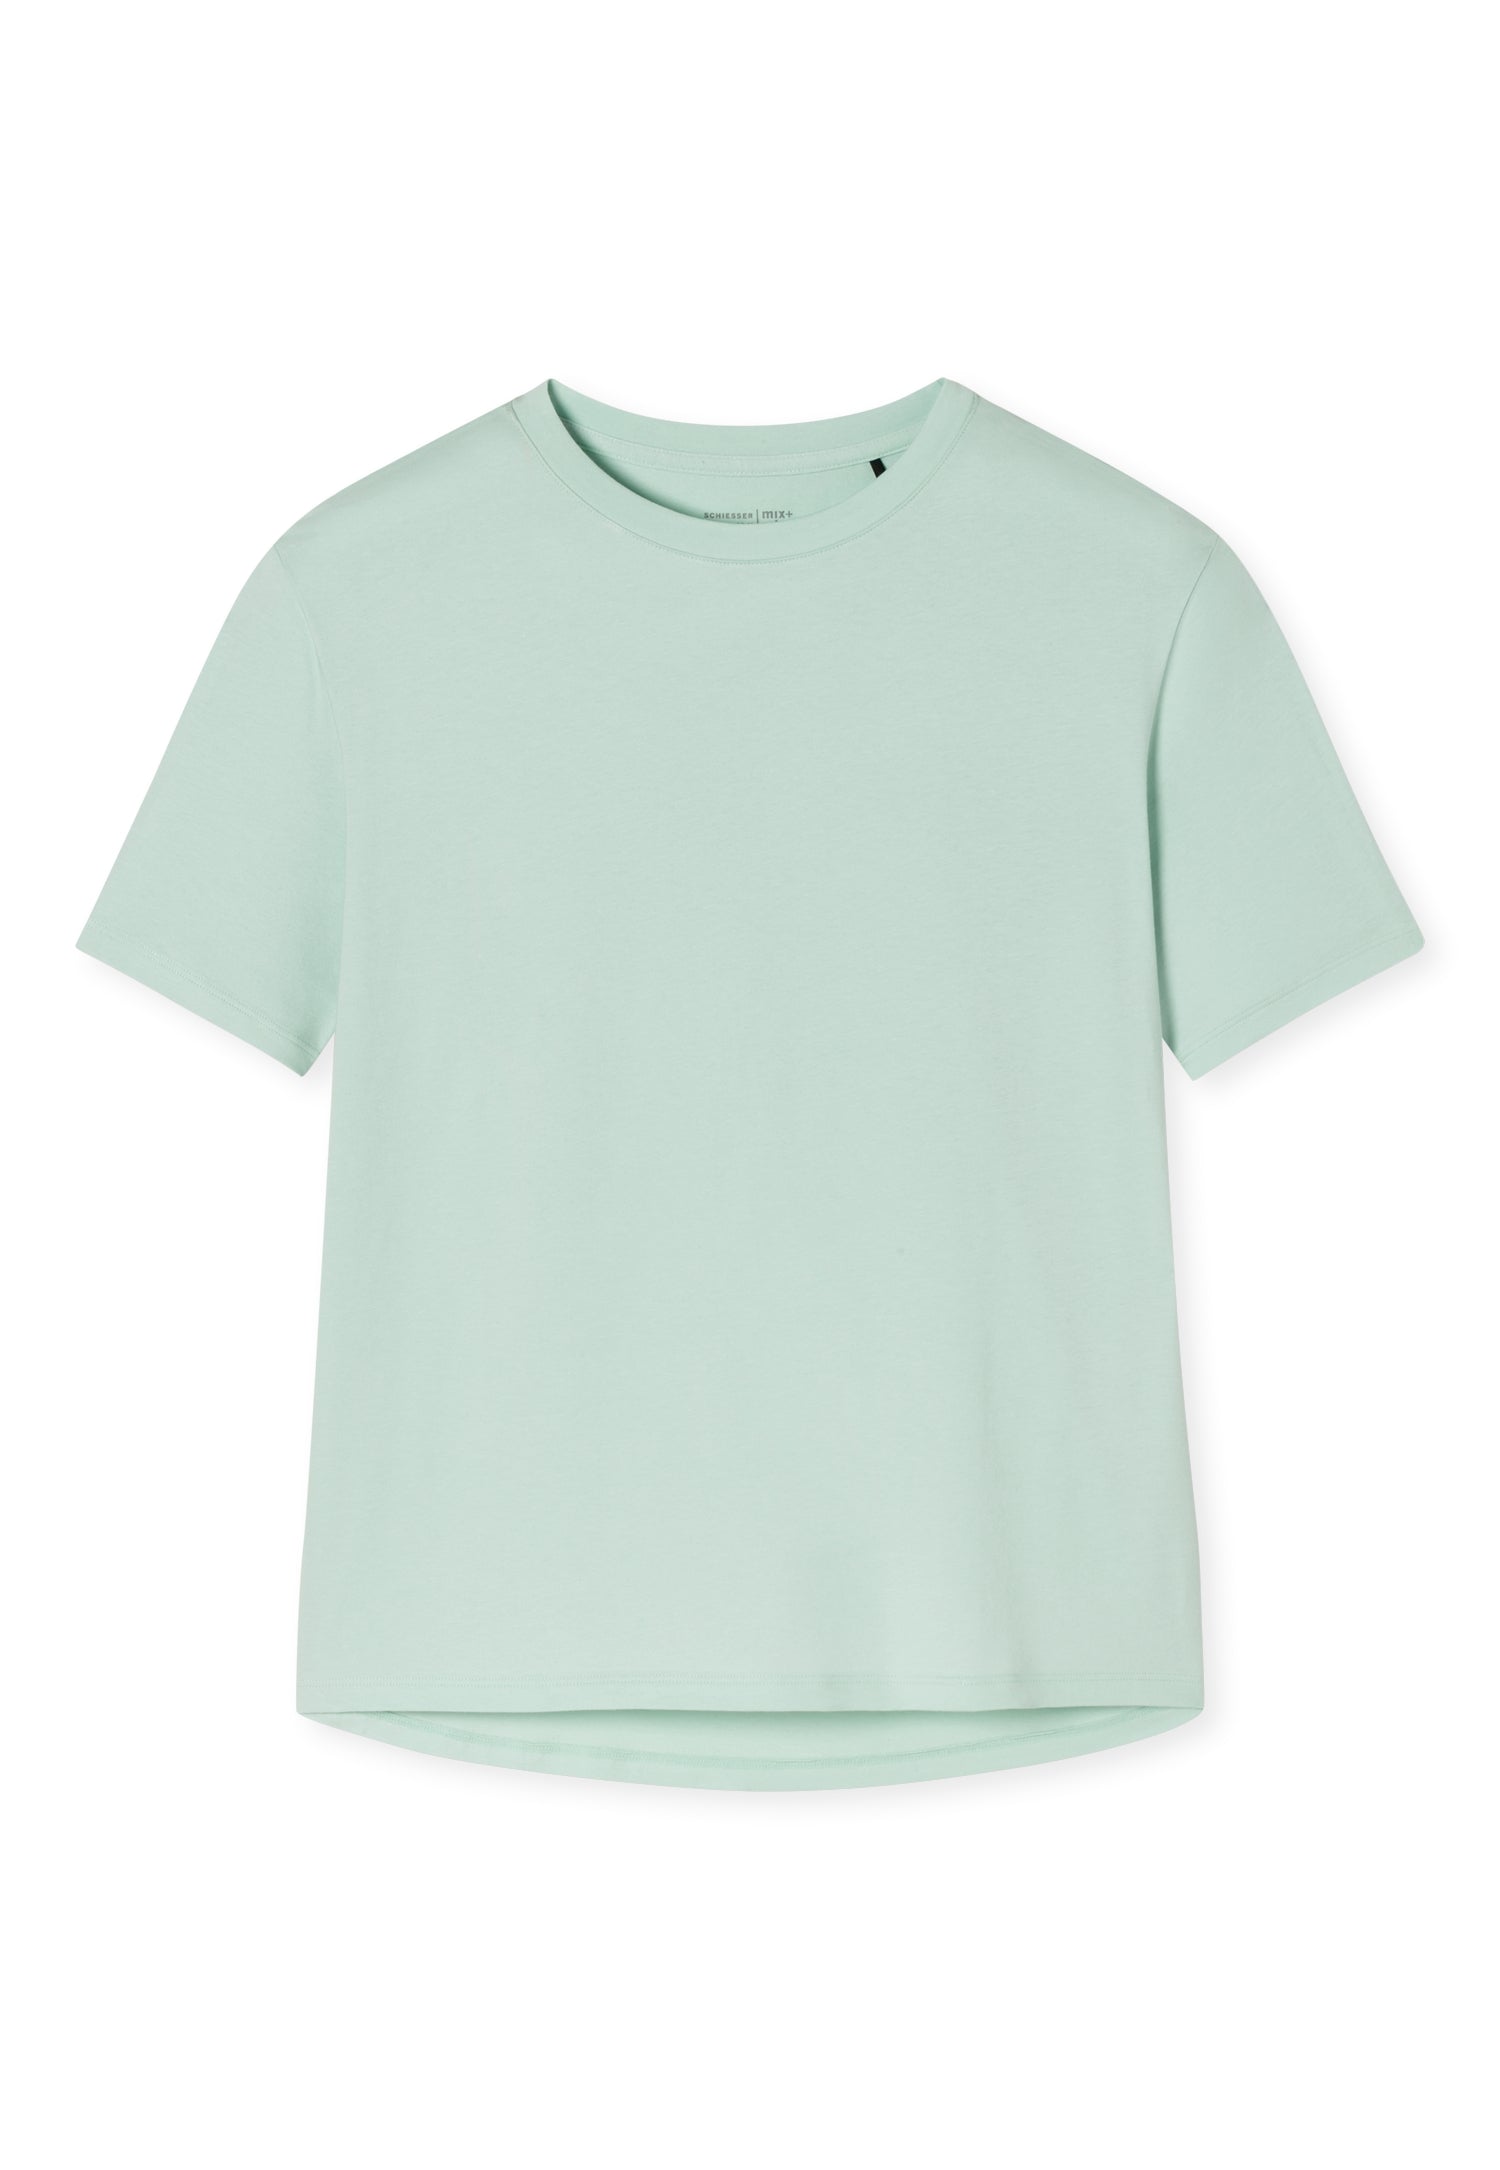 T-Shirt (Mint)